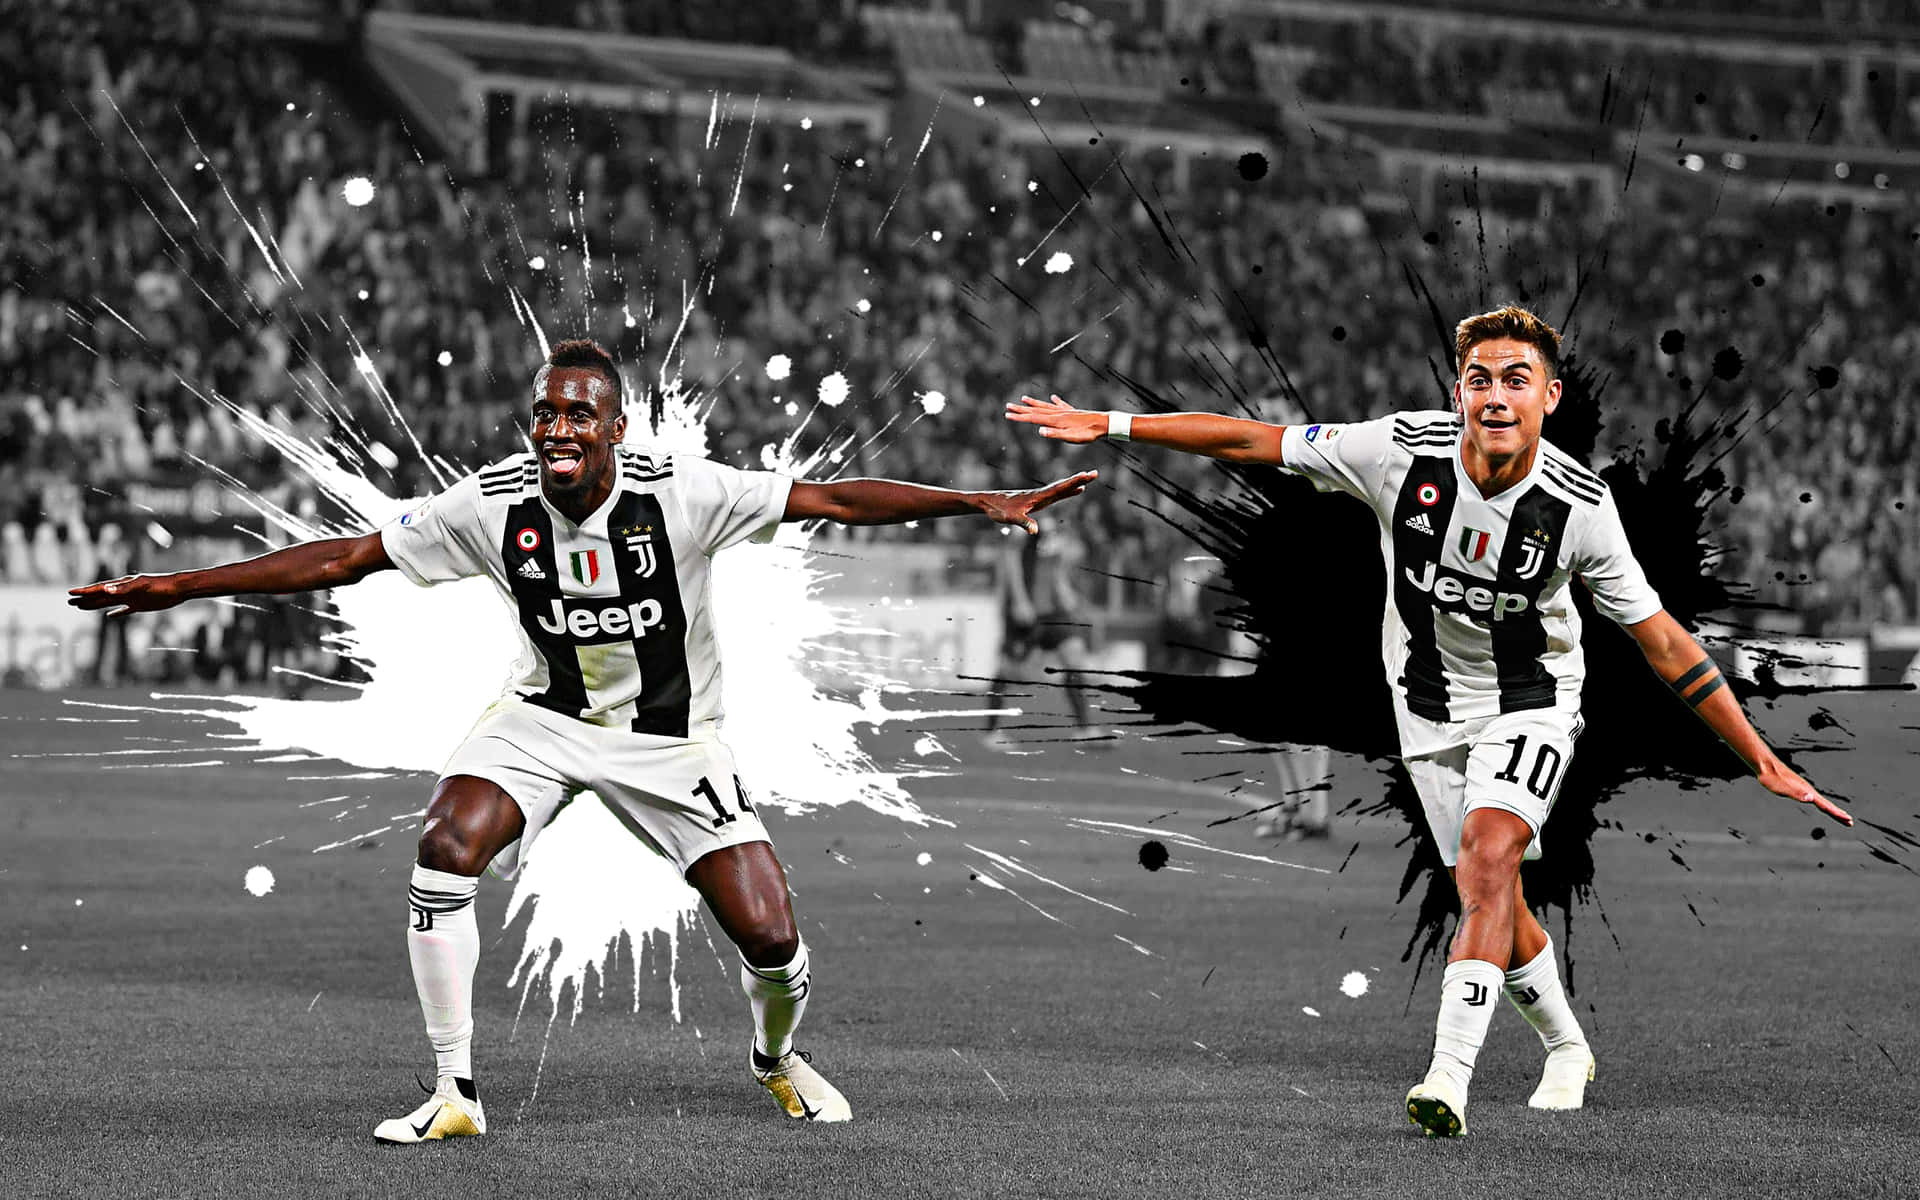 Blaisematuidi Och Paulo Dybala Från Juventus. Wallpaper